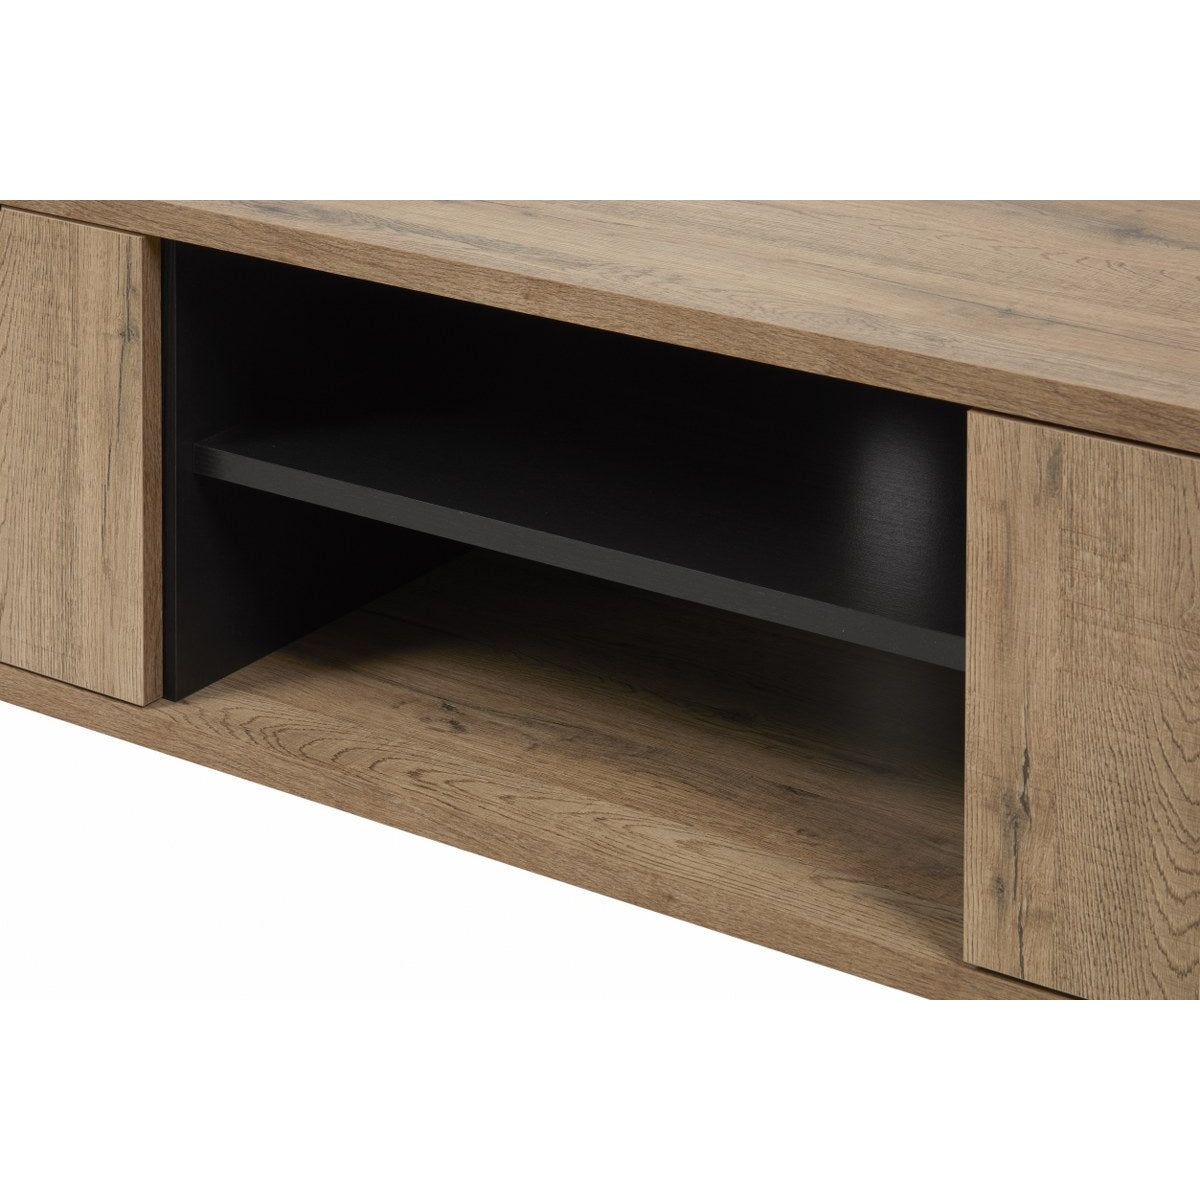 TV cabinet | Furniture series Manor | brown, natural, black | 156